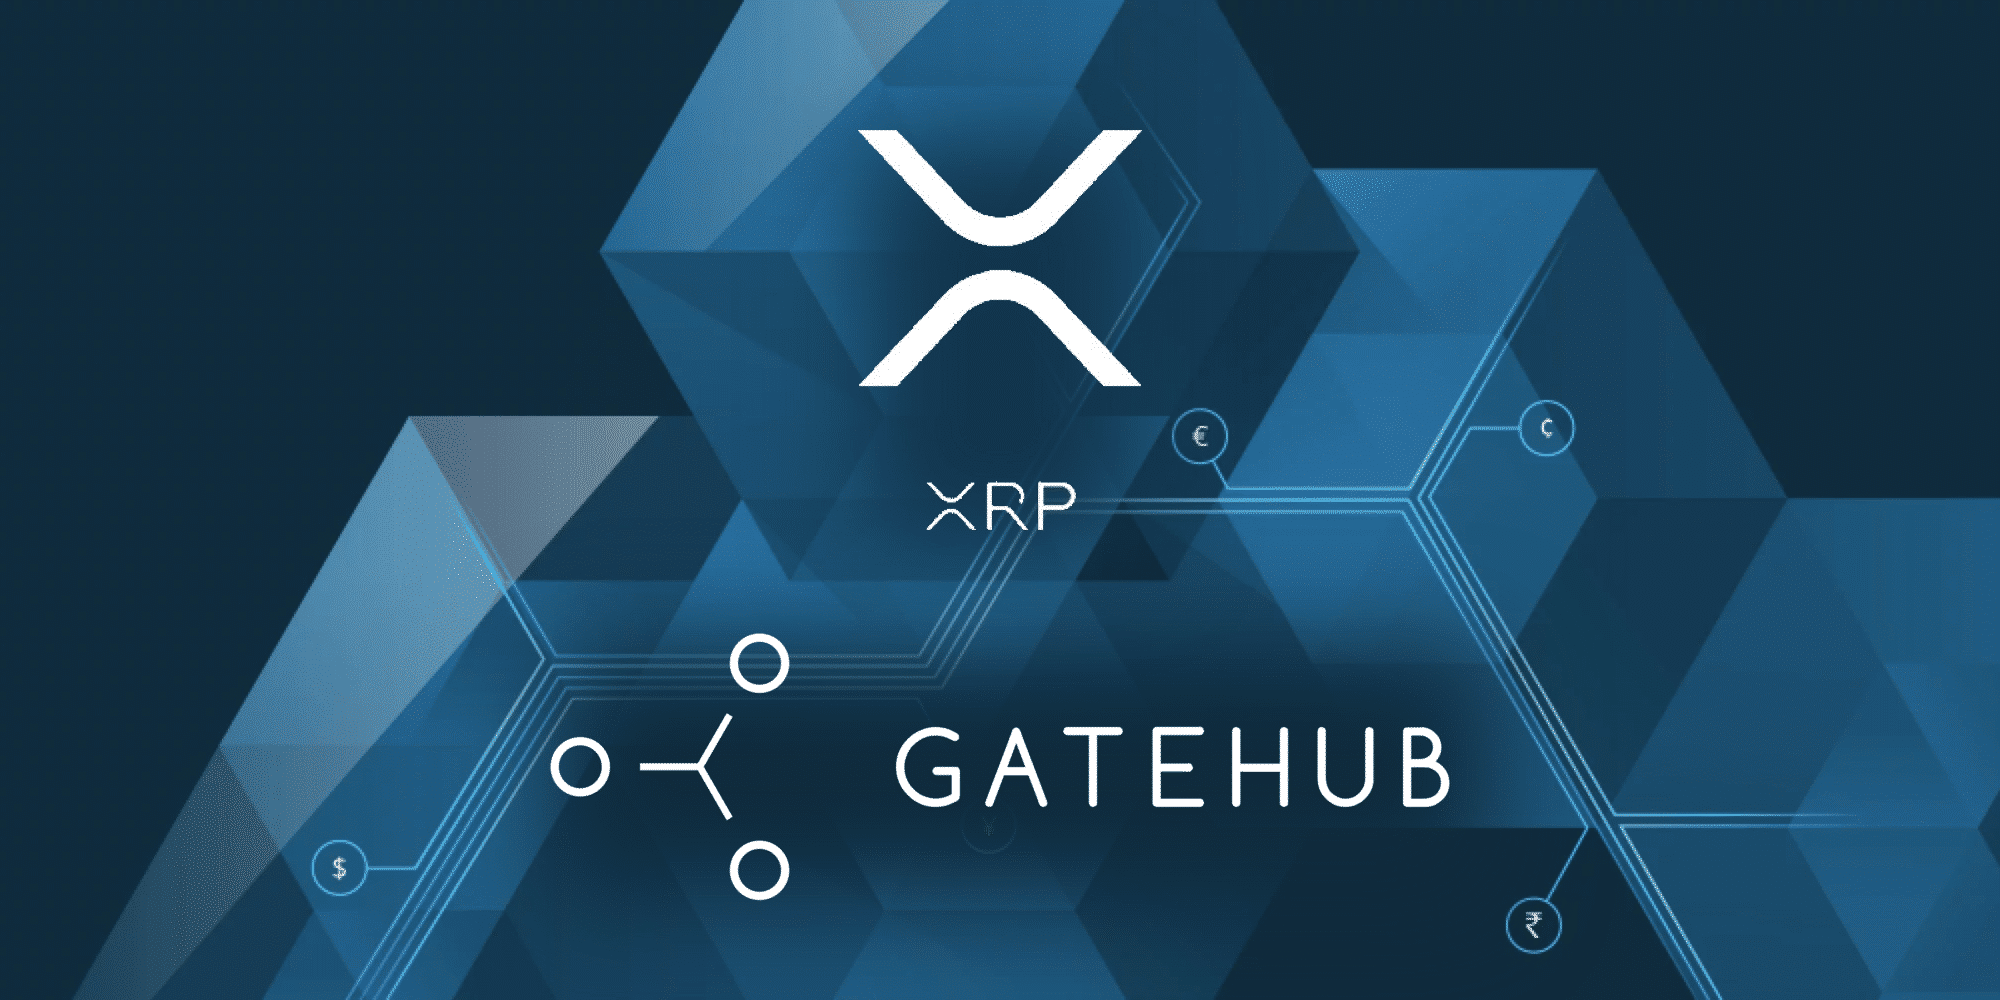 GateHub tuyên bố sẽ tiếp tục hỗ trợ XRP bất chấp kiện tụng từ SEC